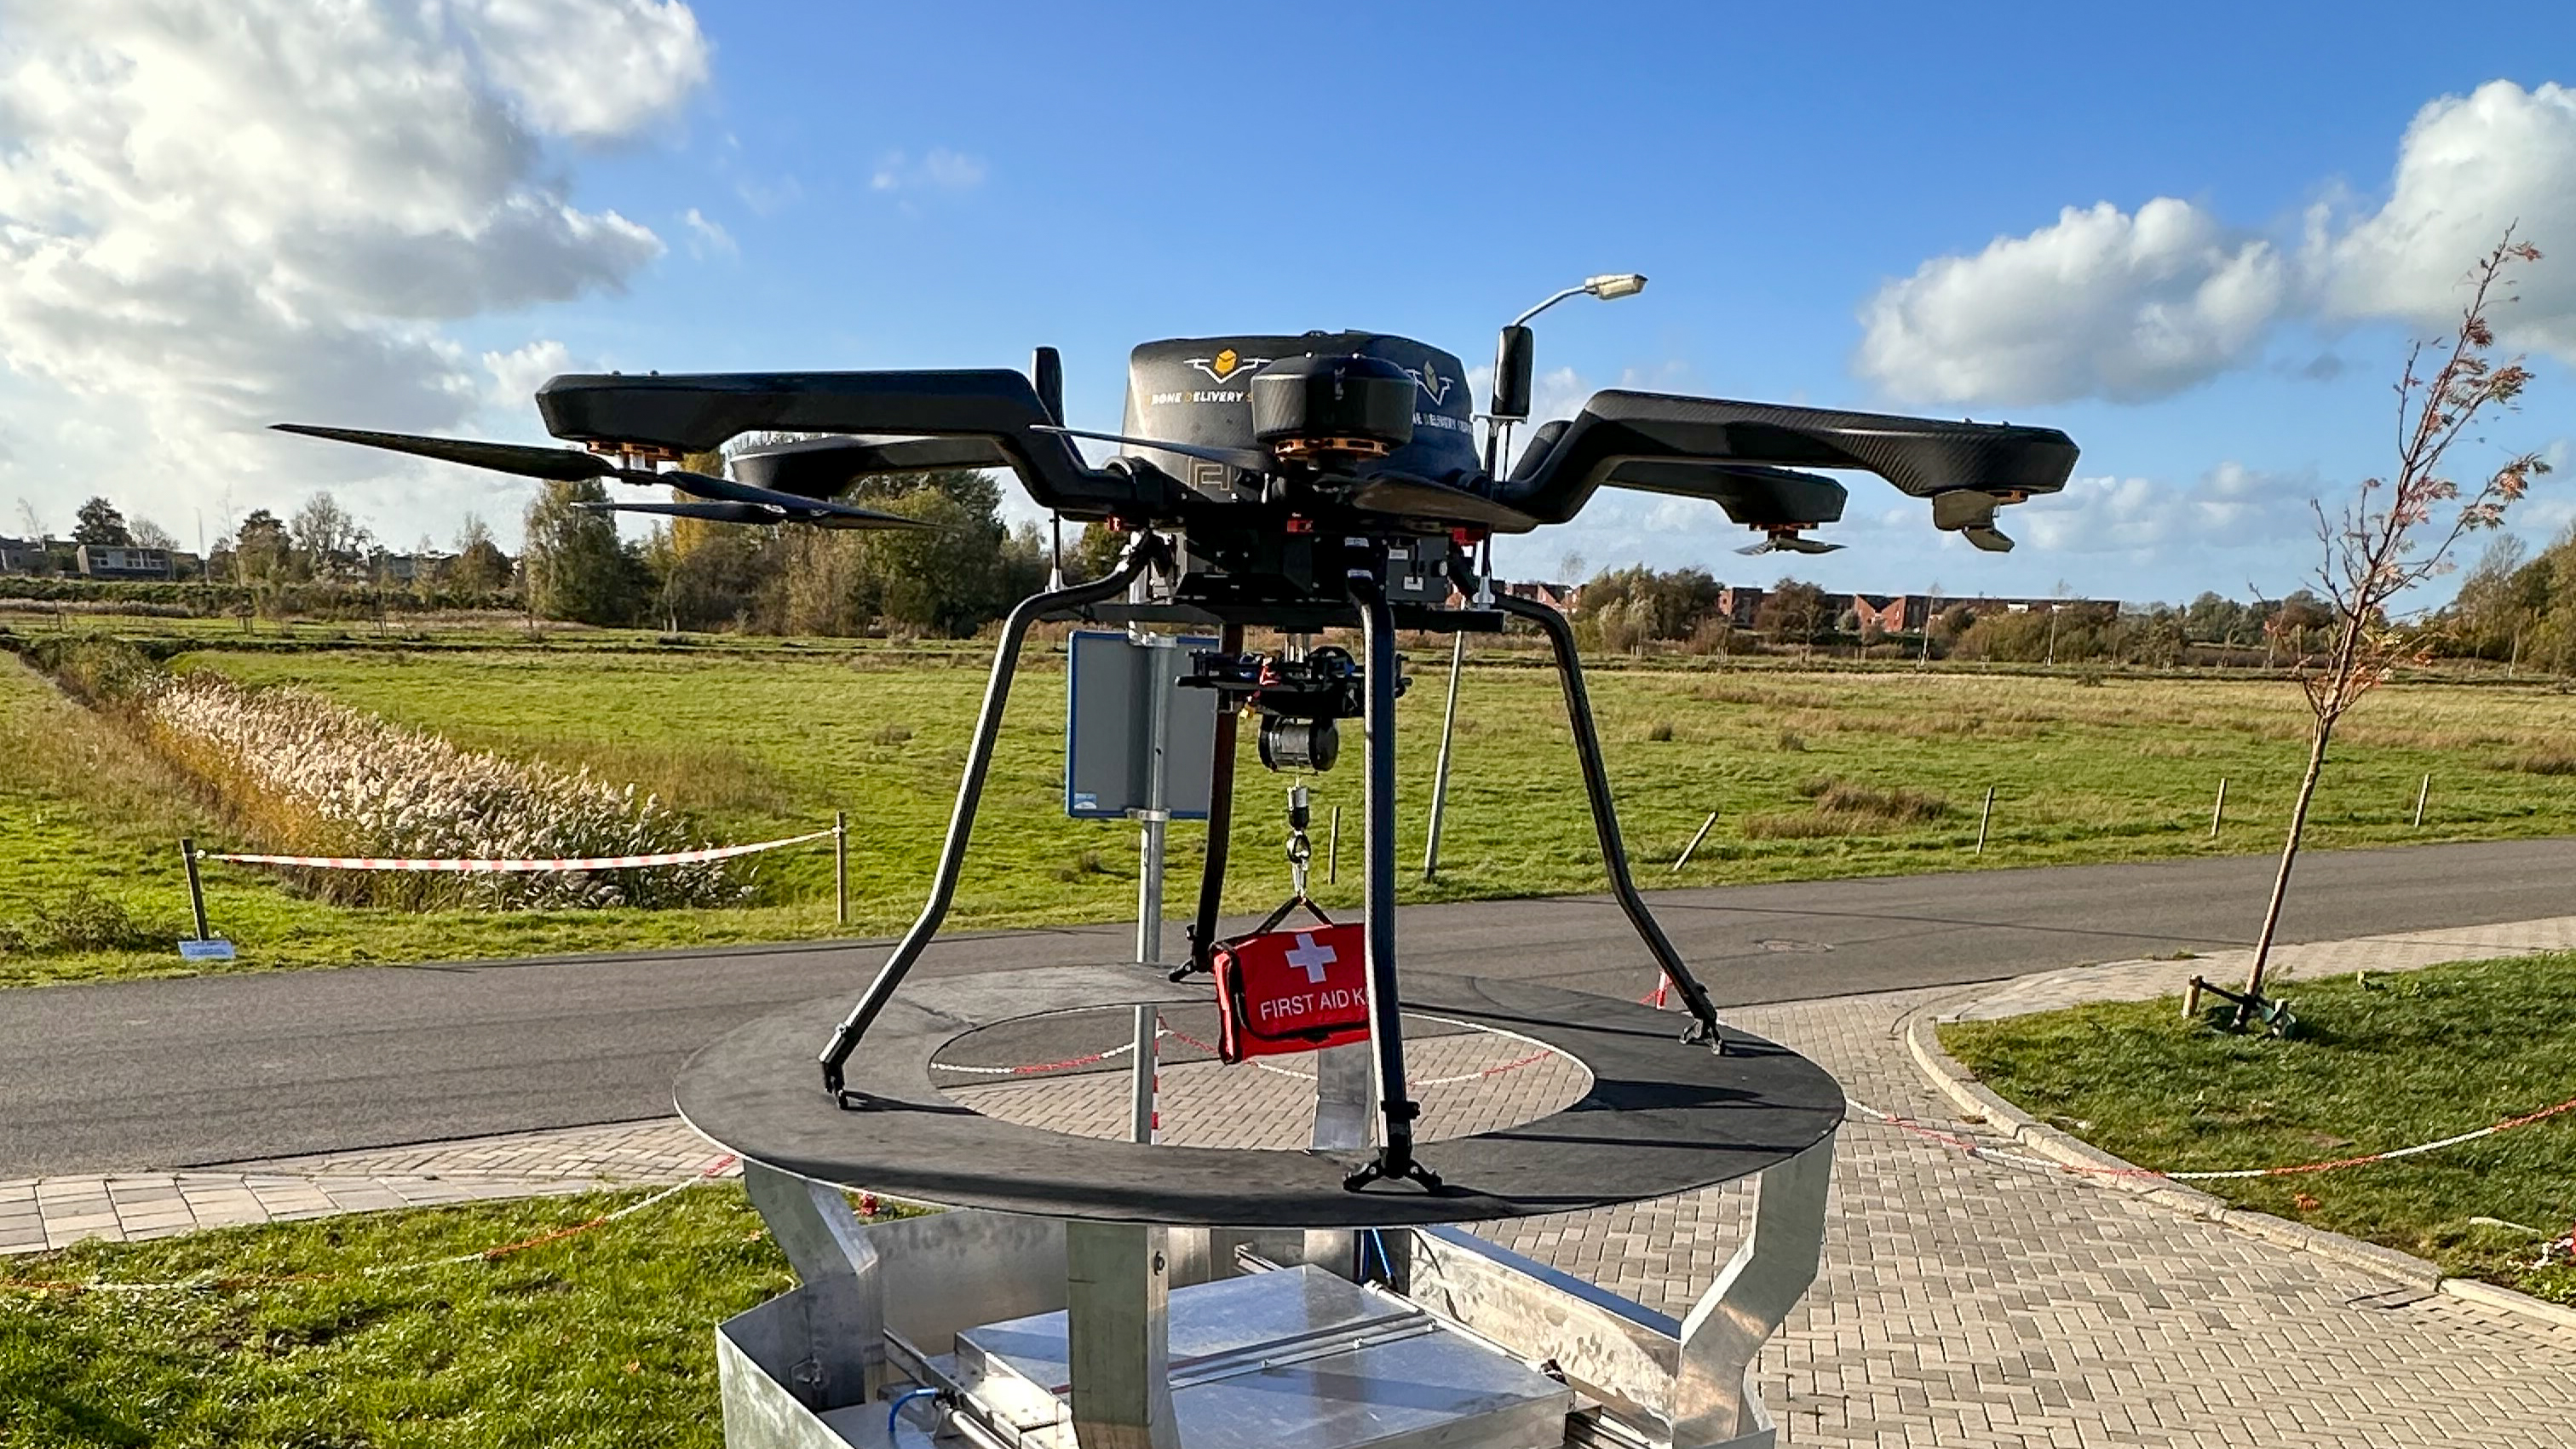 Een bezorgdrone van een pilot waarin de inzet van drone leveringen wordt getest als een veilig, efficiënt en duurzame alternatief